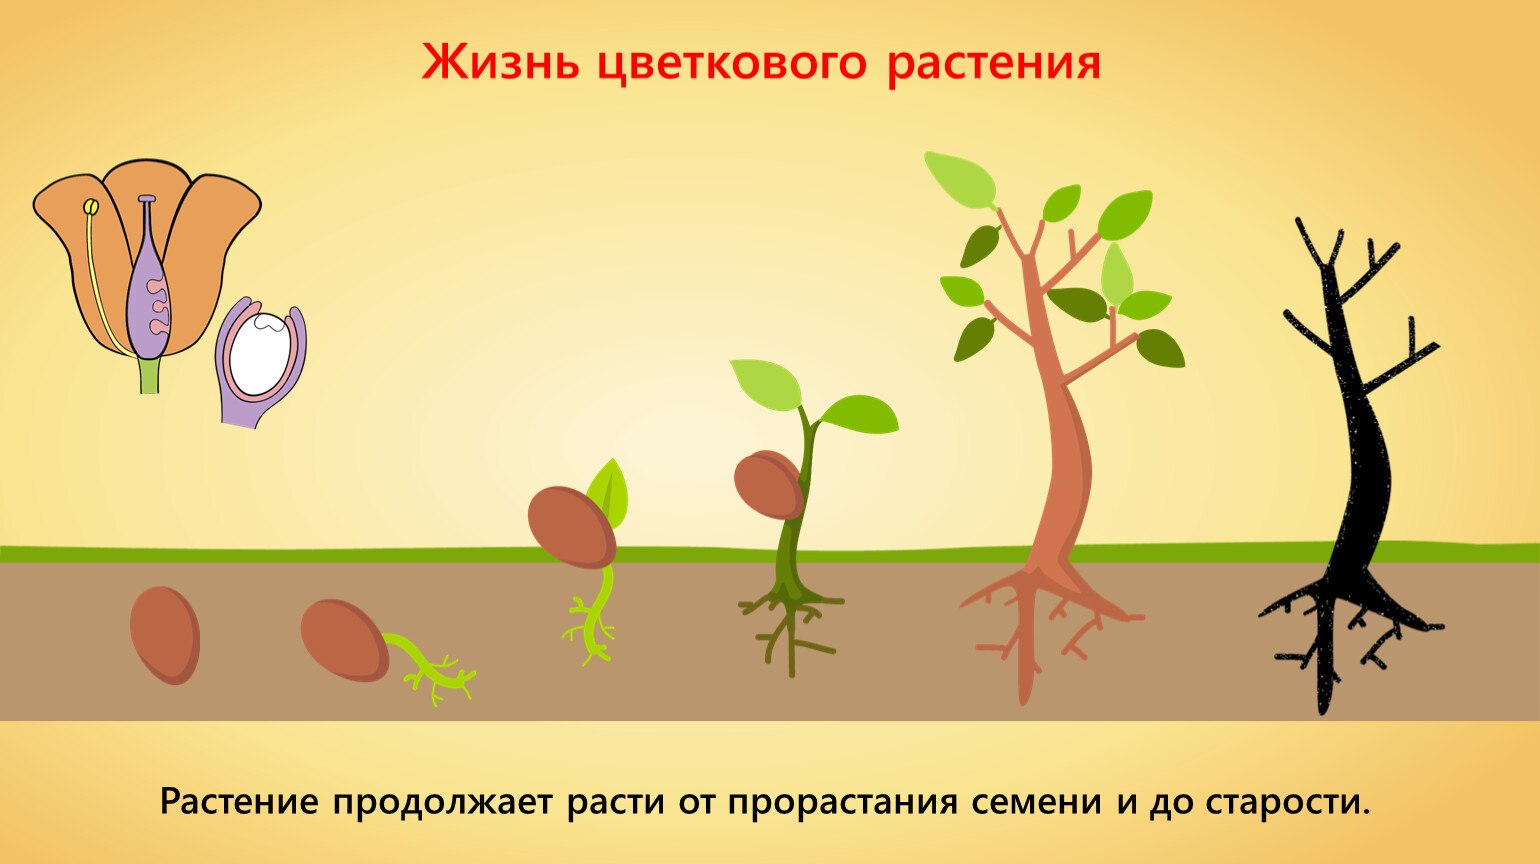 Развитие цветкового растения. Жизнь растений Тимирязева. Формирование организма. Жизнь цветкового растения начинается с семени.